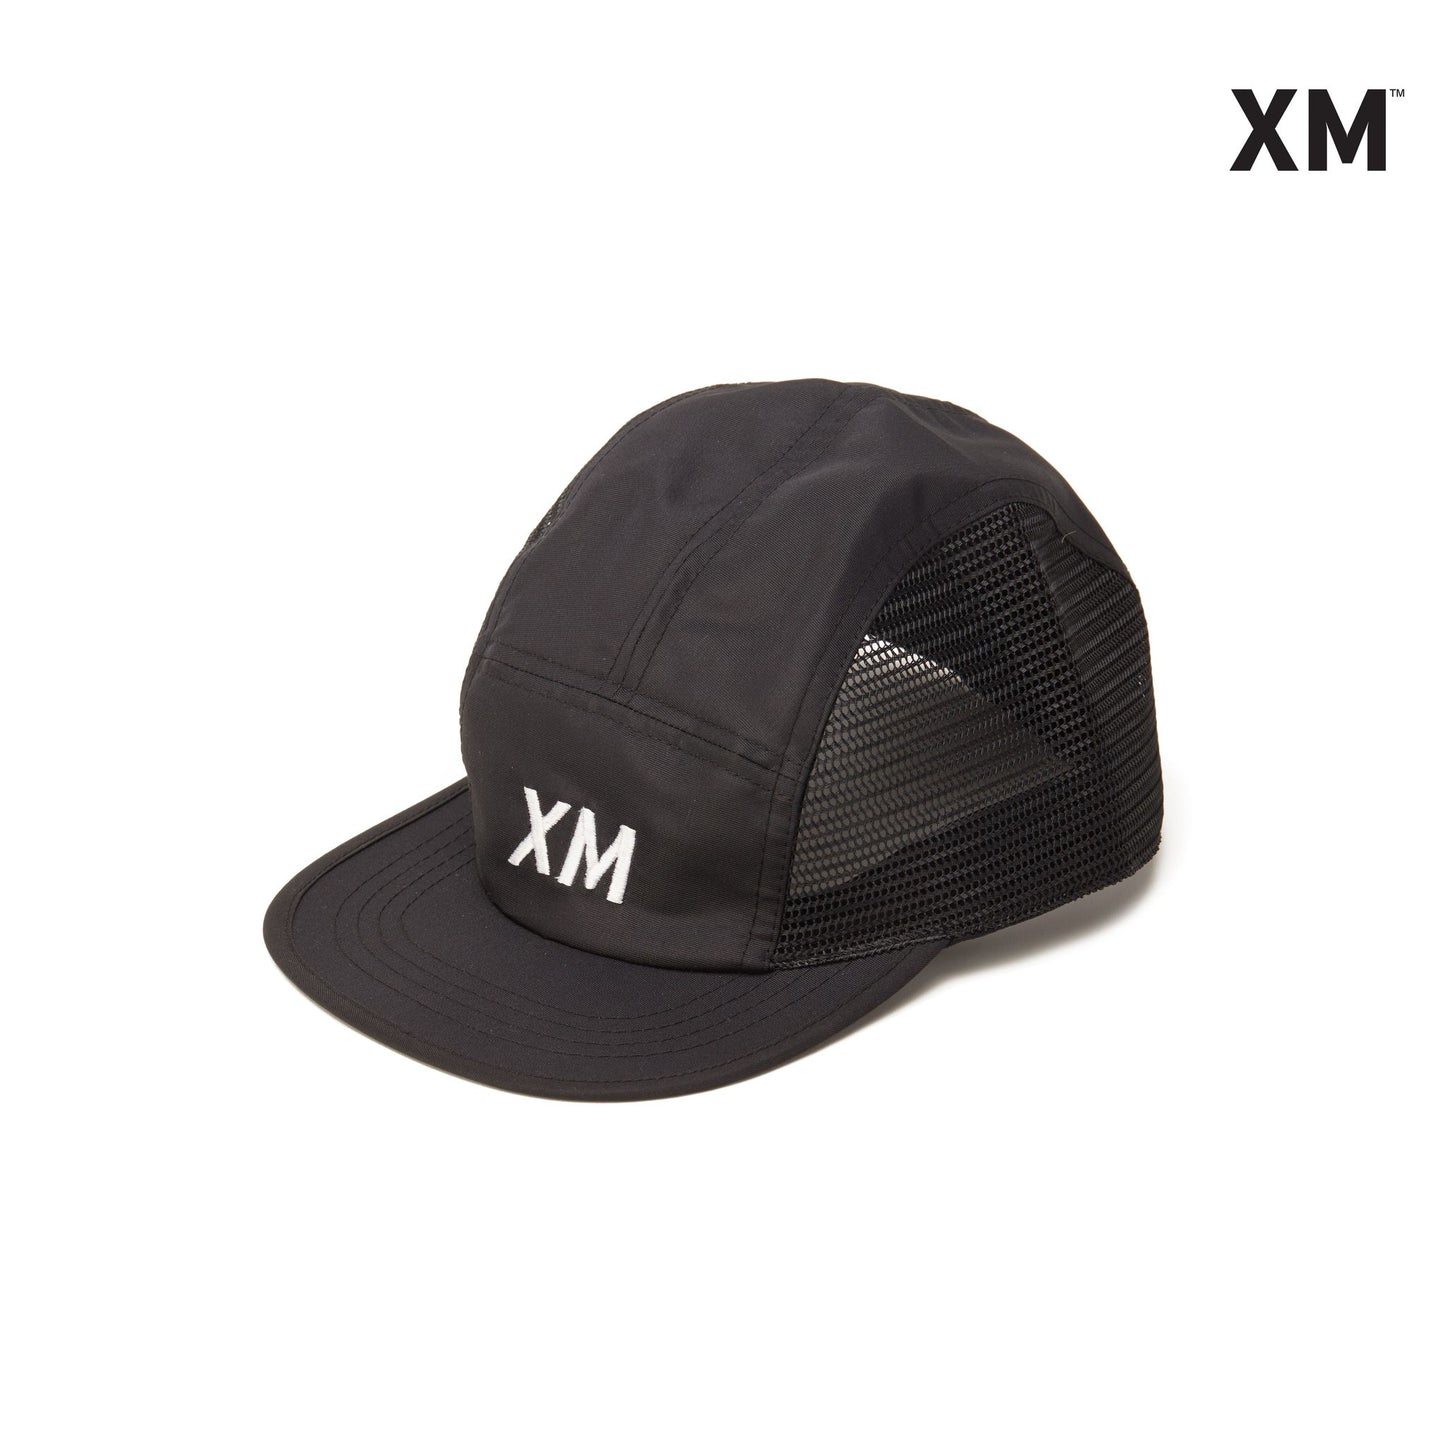 XM Mesh Cap